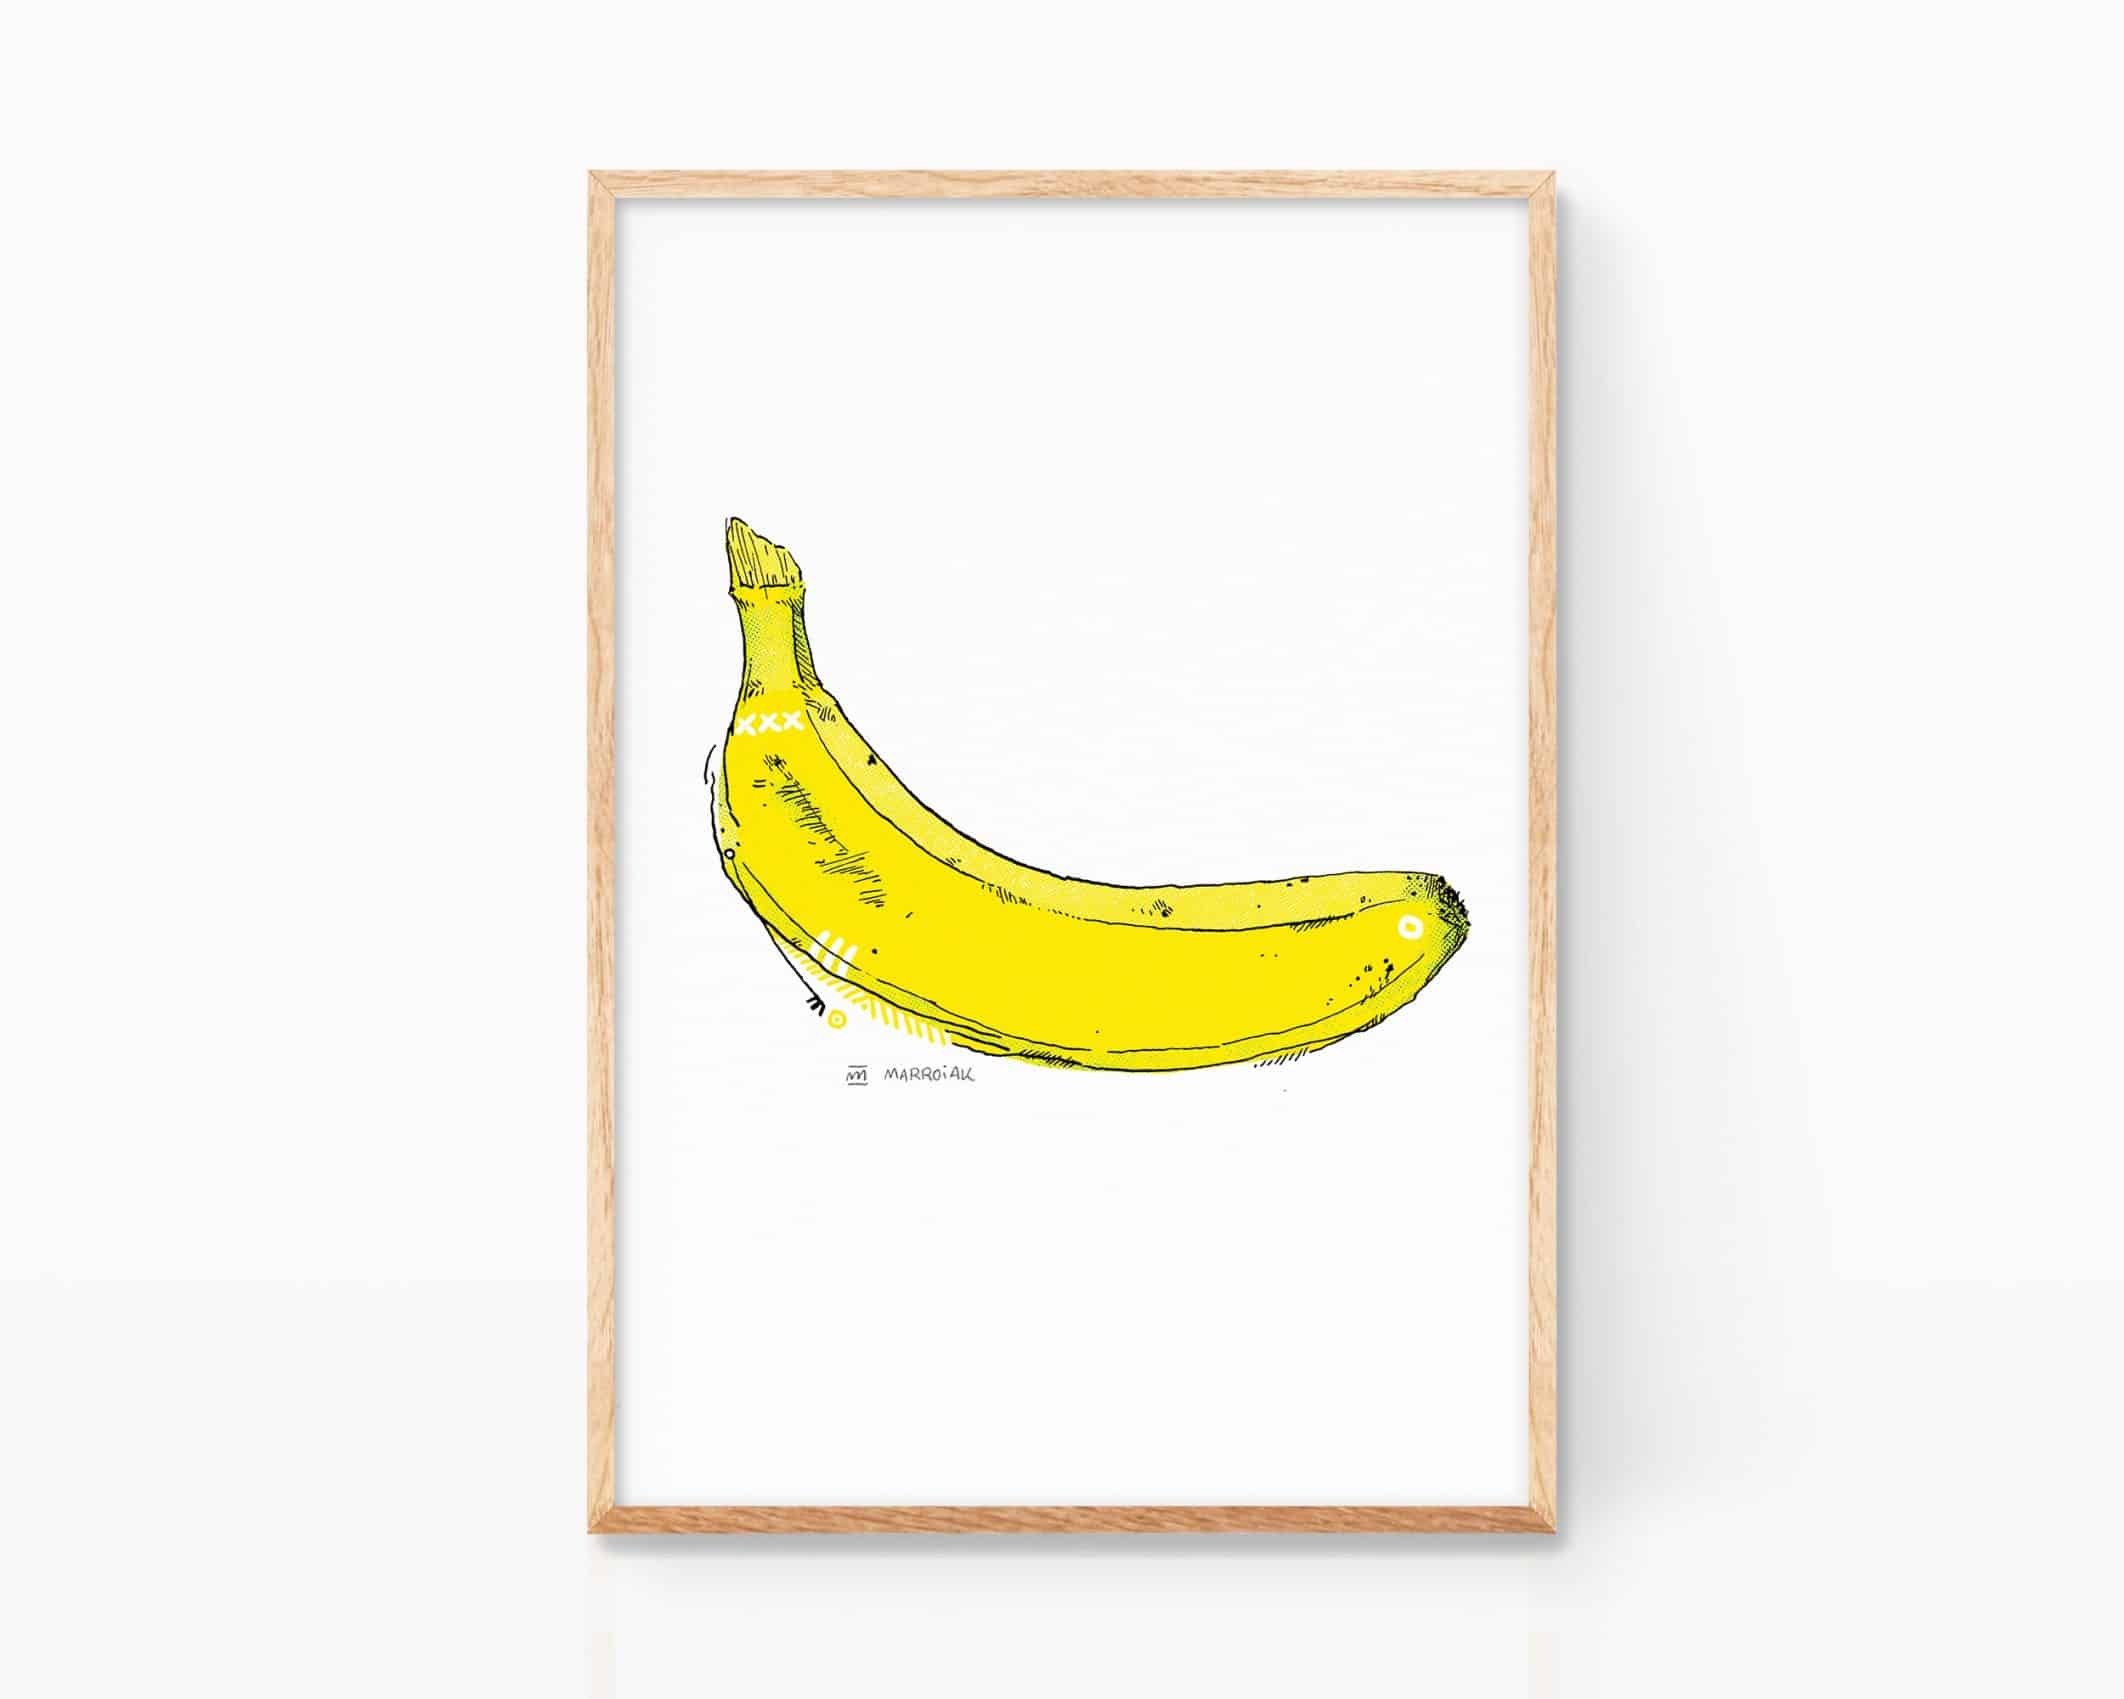 Cuadro decorativo para cocinas con una banana al estilo Andy Warhol y Velvet Underground. Dibujo a tinta más impresión digital.